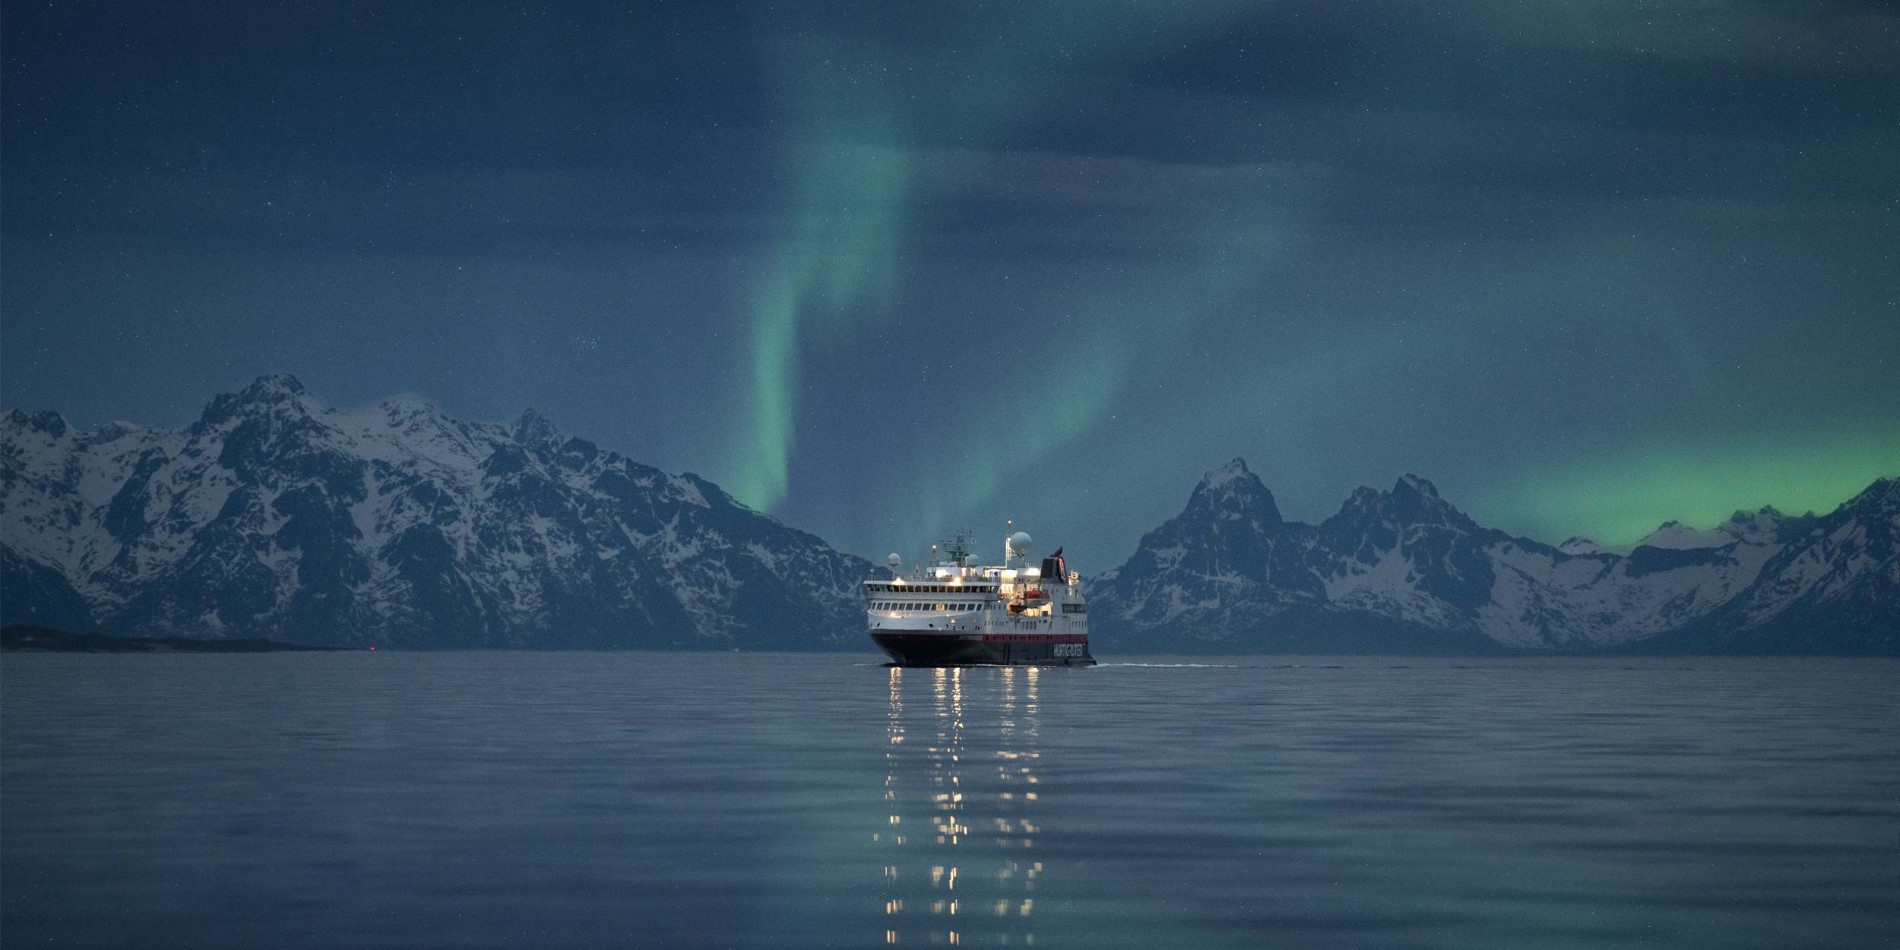 MS Spitsbergen under the Northern Lights in Norway